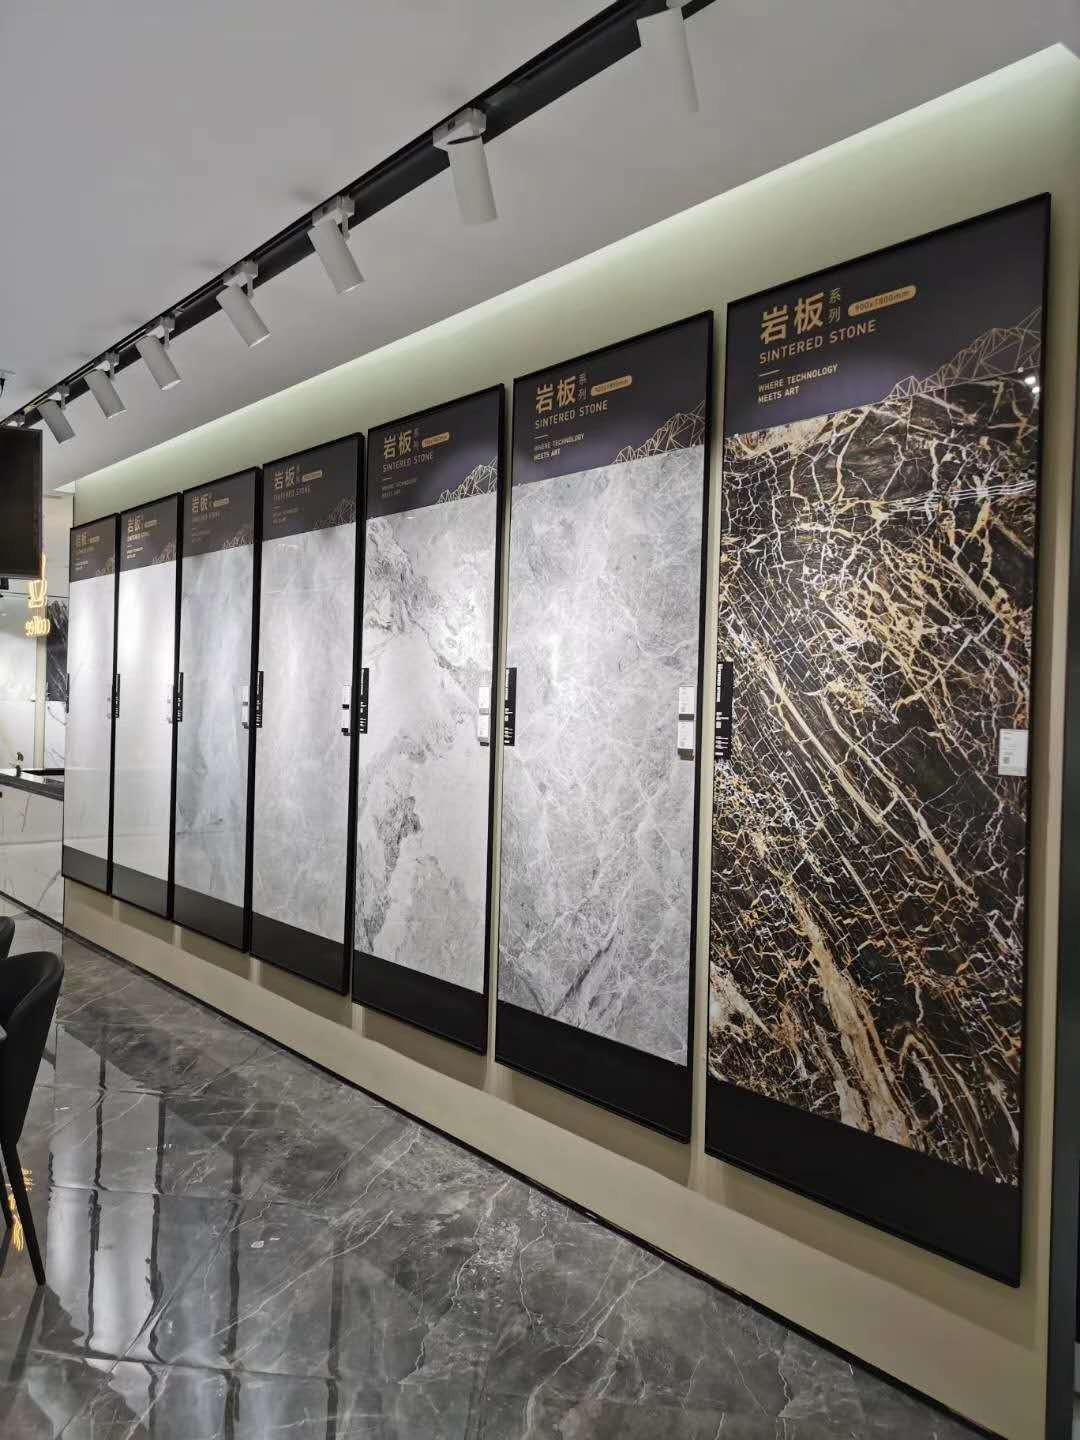 厦门禾有木地板展示架800瓷砖展具推拉柜节省空间多样展示